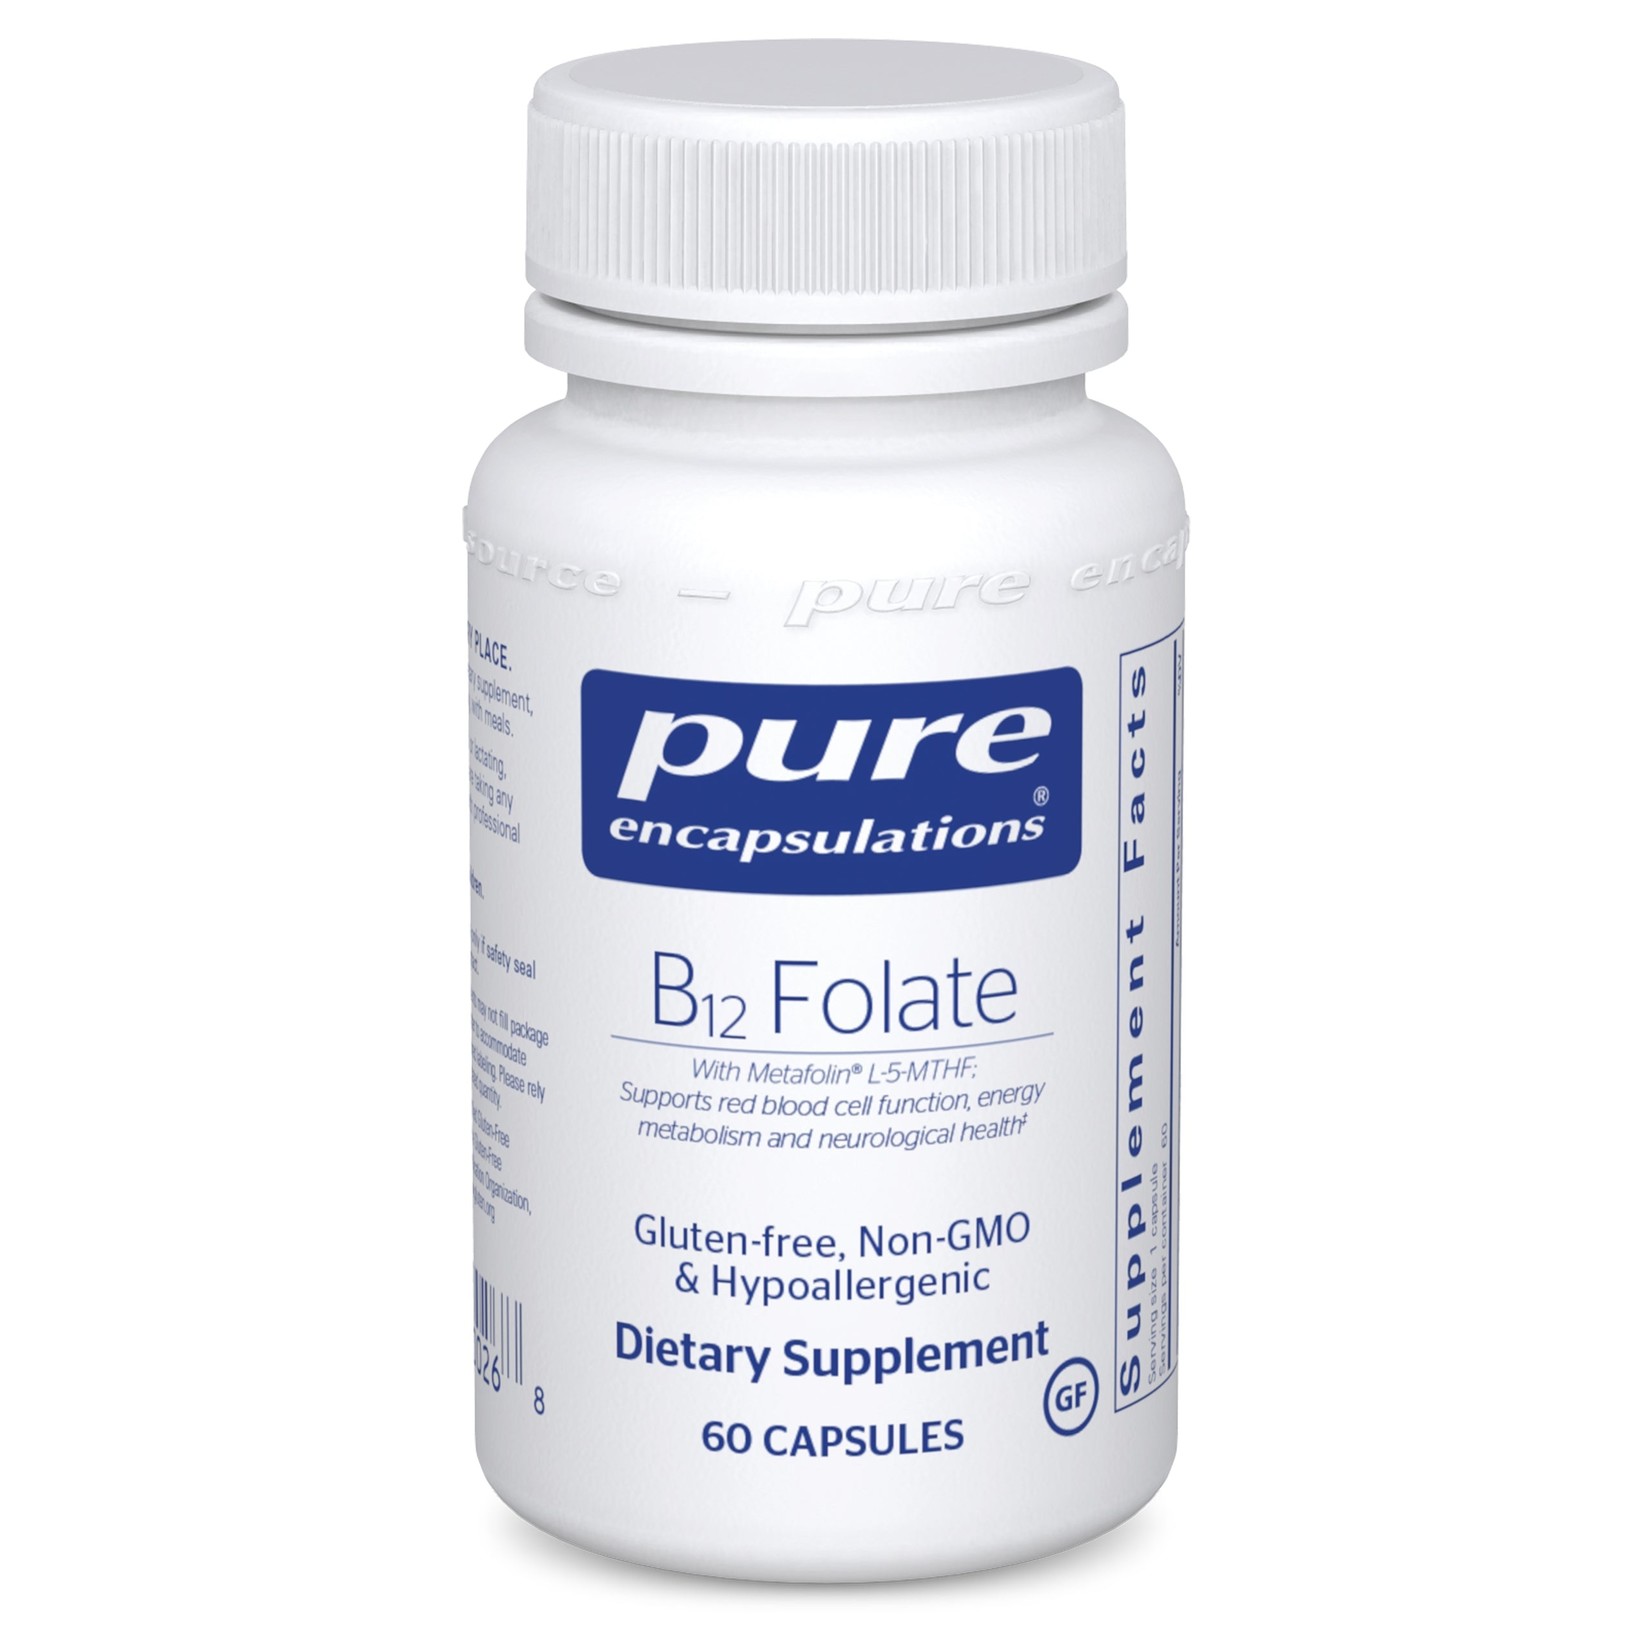 Pure Encapsulations Pure Encapsulations - B12 Folate - 60 Capsules